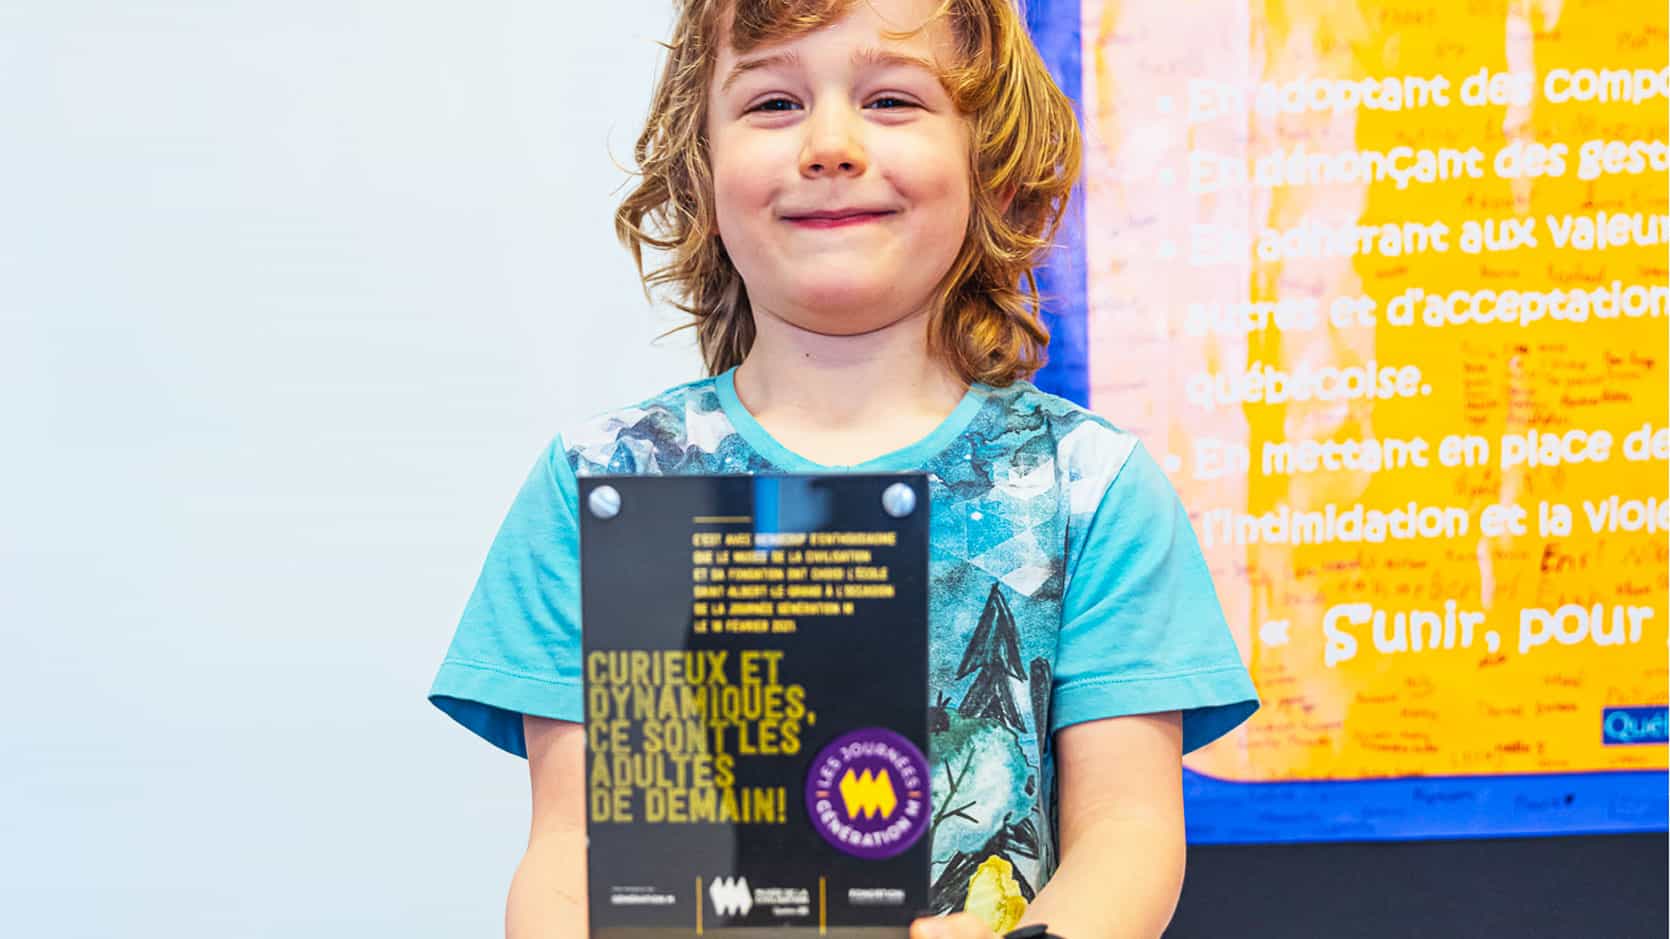 Jeune garçon souriant qui tien une affiche d'une Journée Génération M